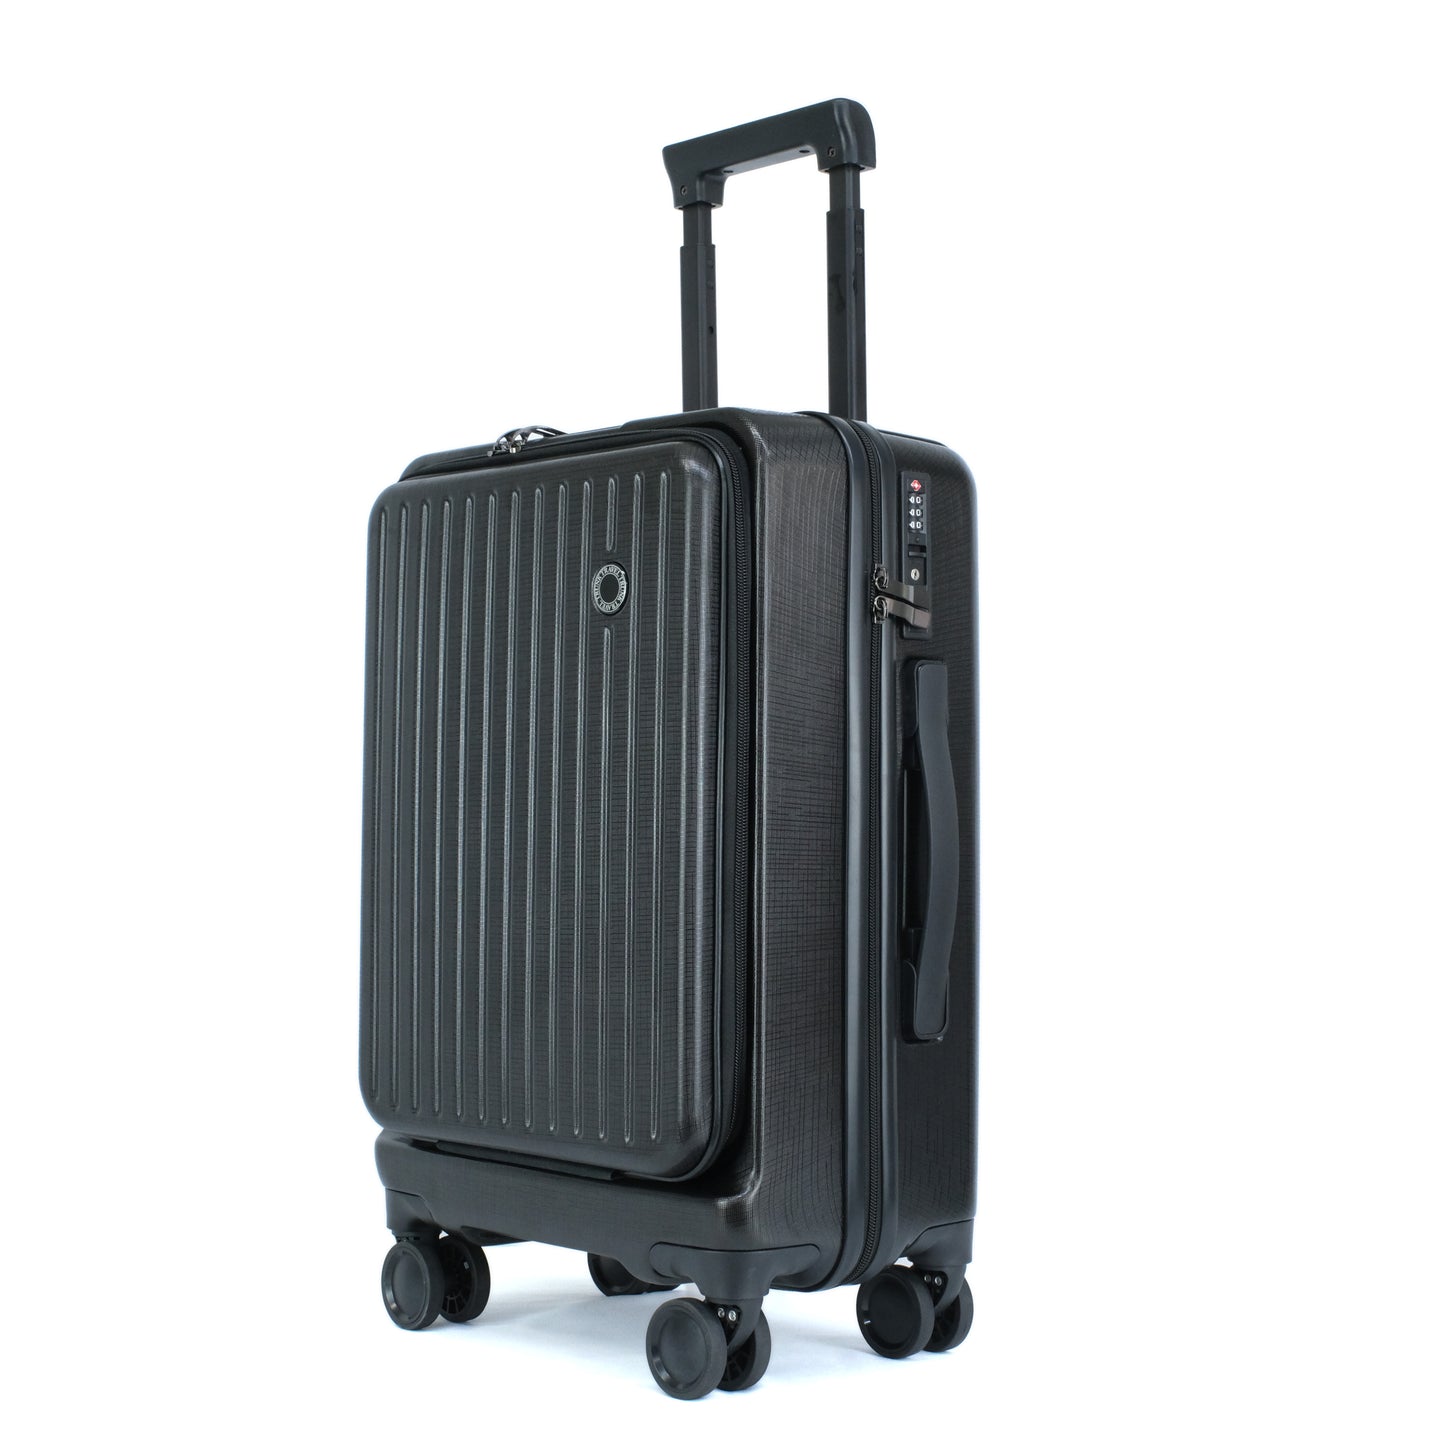 フロントポケット付きキャリーケース 機内持ち込み対応 TSAロック搭載 スーツケース